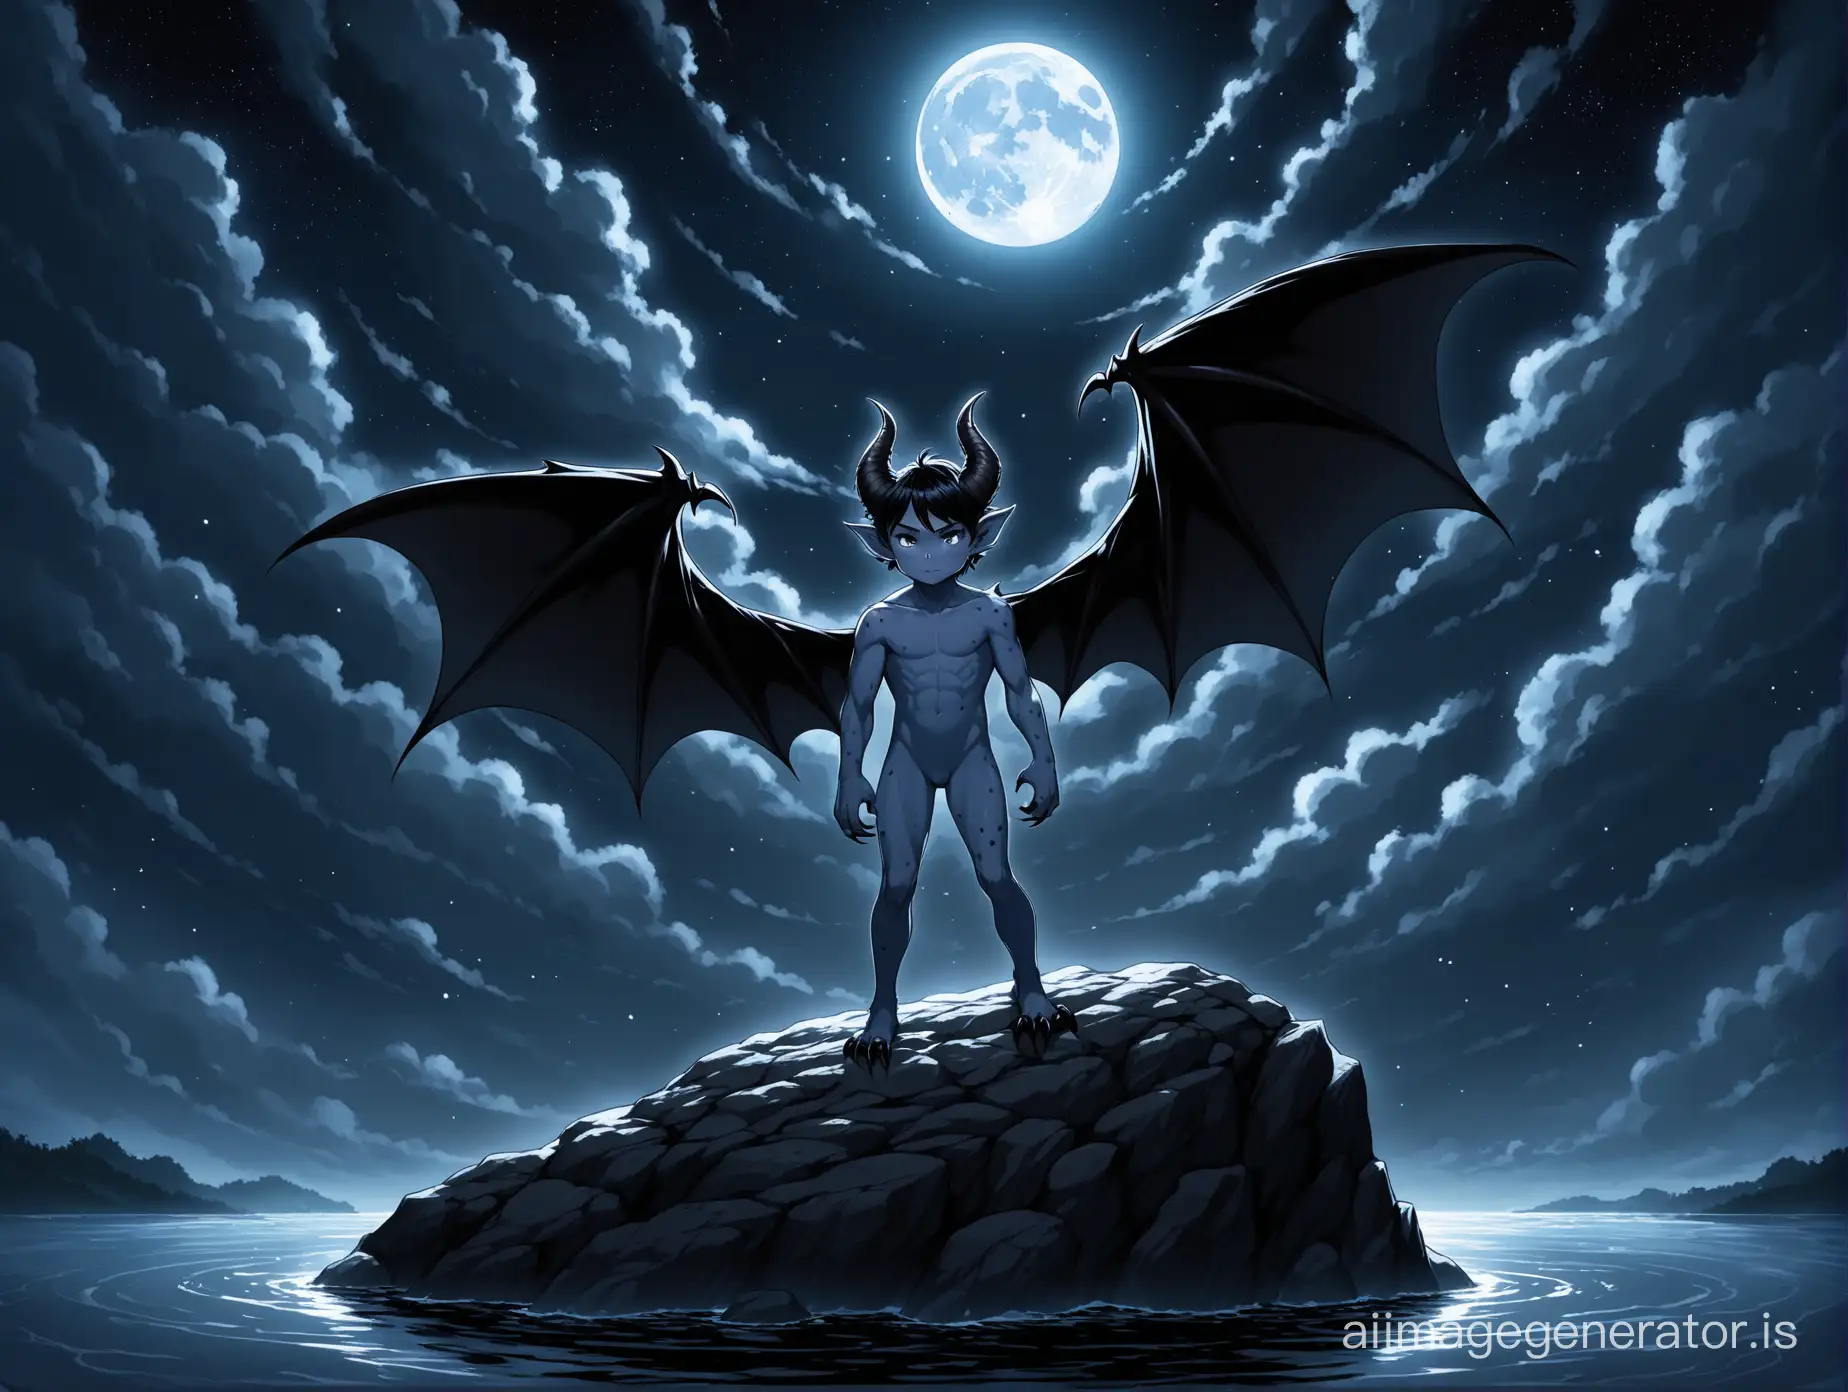 Night-Scene-Nude-Demon-Boy-with-Batlike-Wings-on-Rock